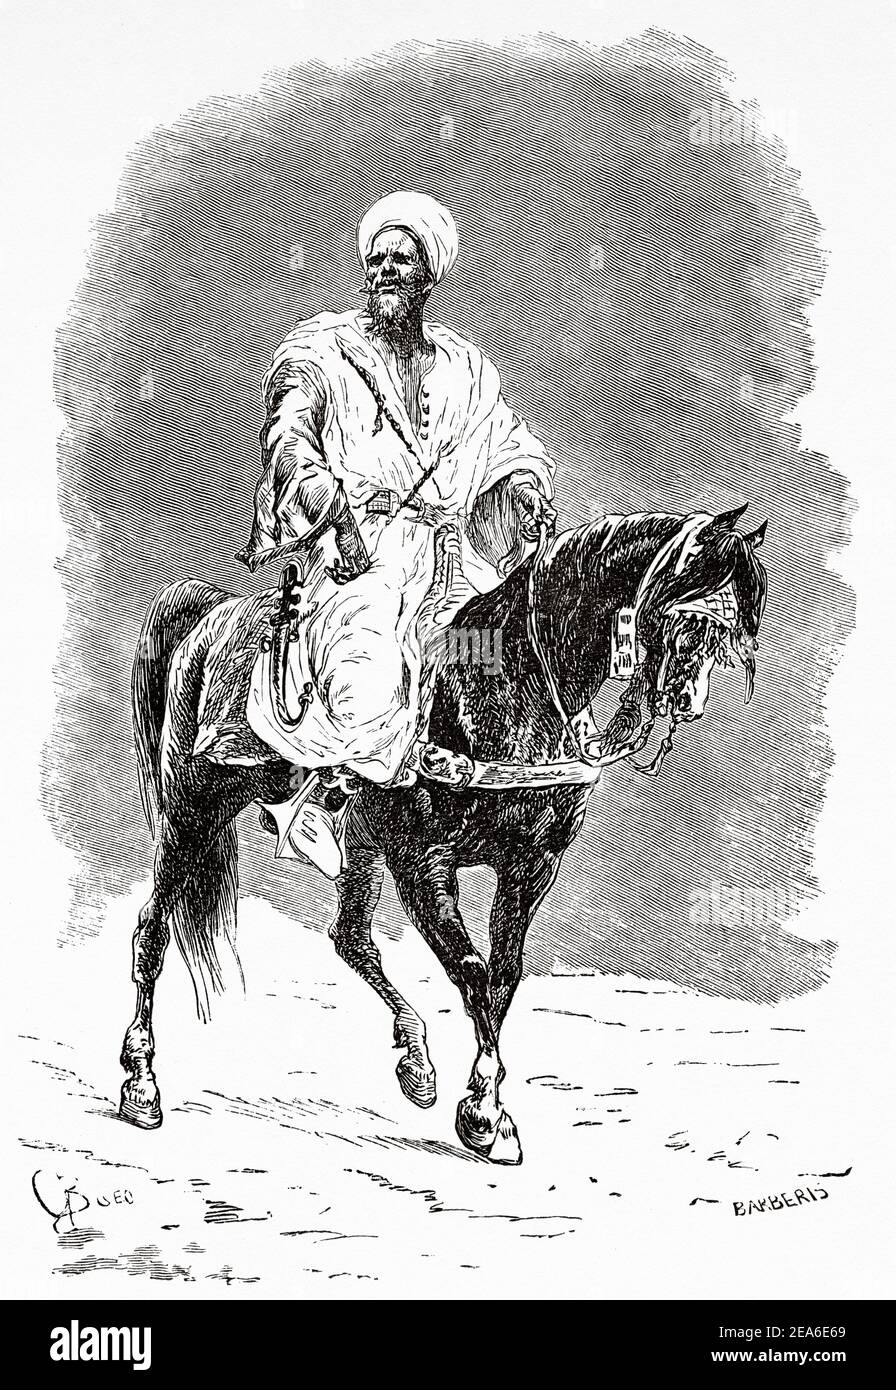 Le gouverneur marocain Fes-Gilali Ben-Amu a monté à cheval, au Maroc, en Afrique du Nord. Ancienne illustration gravée du XIXe siècle d'El Mundo Ilustrado 1879 Banque D'Images